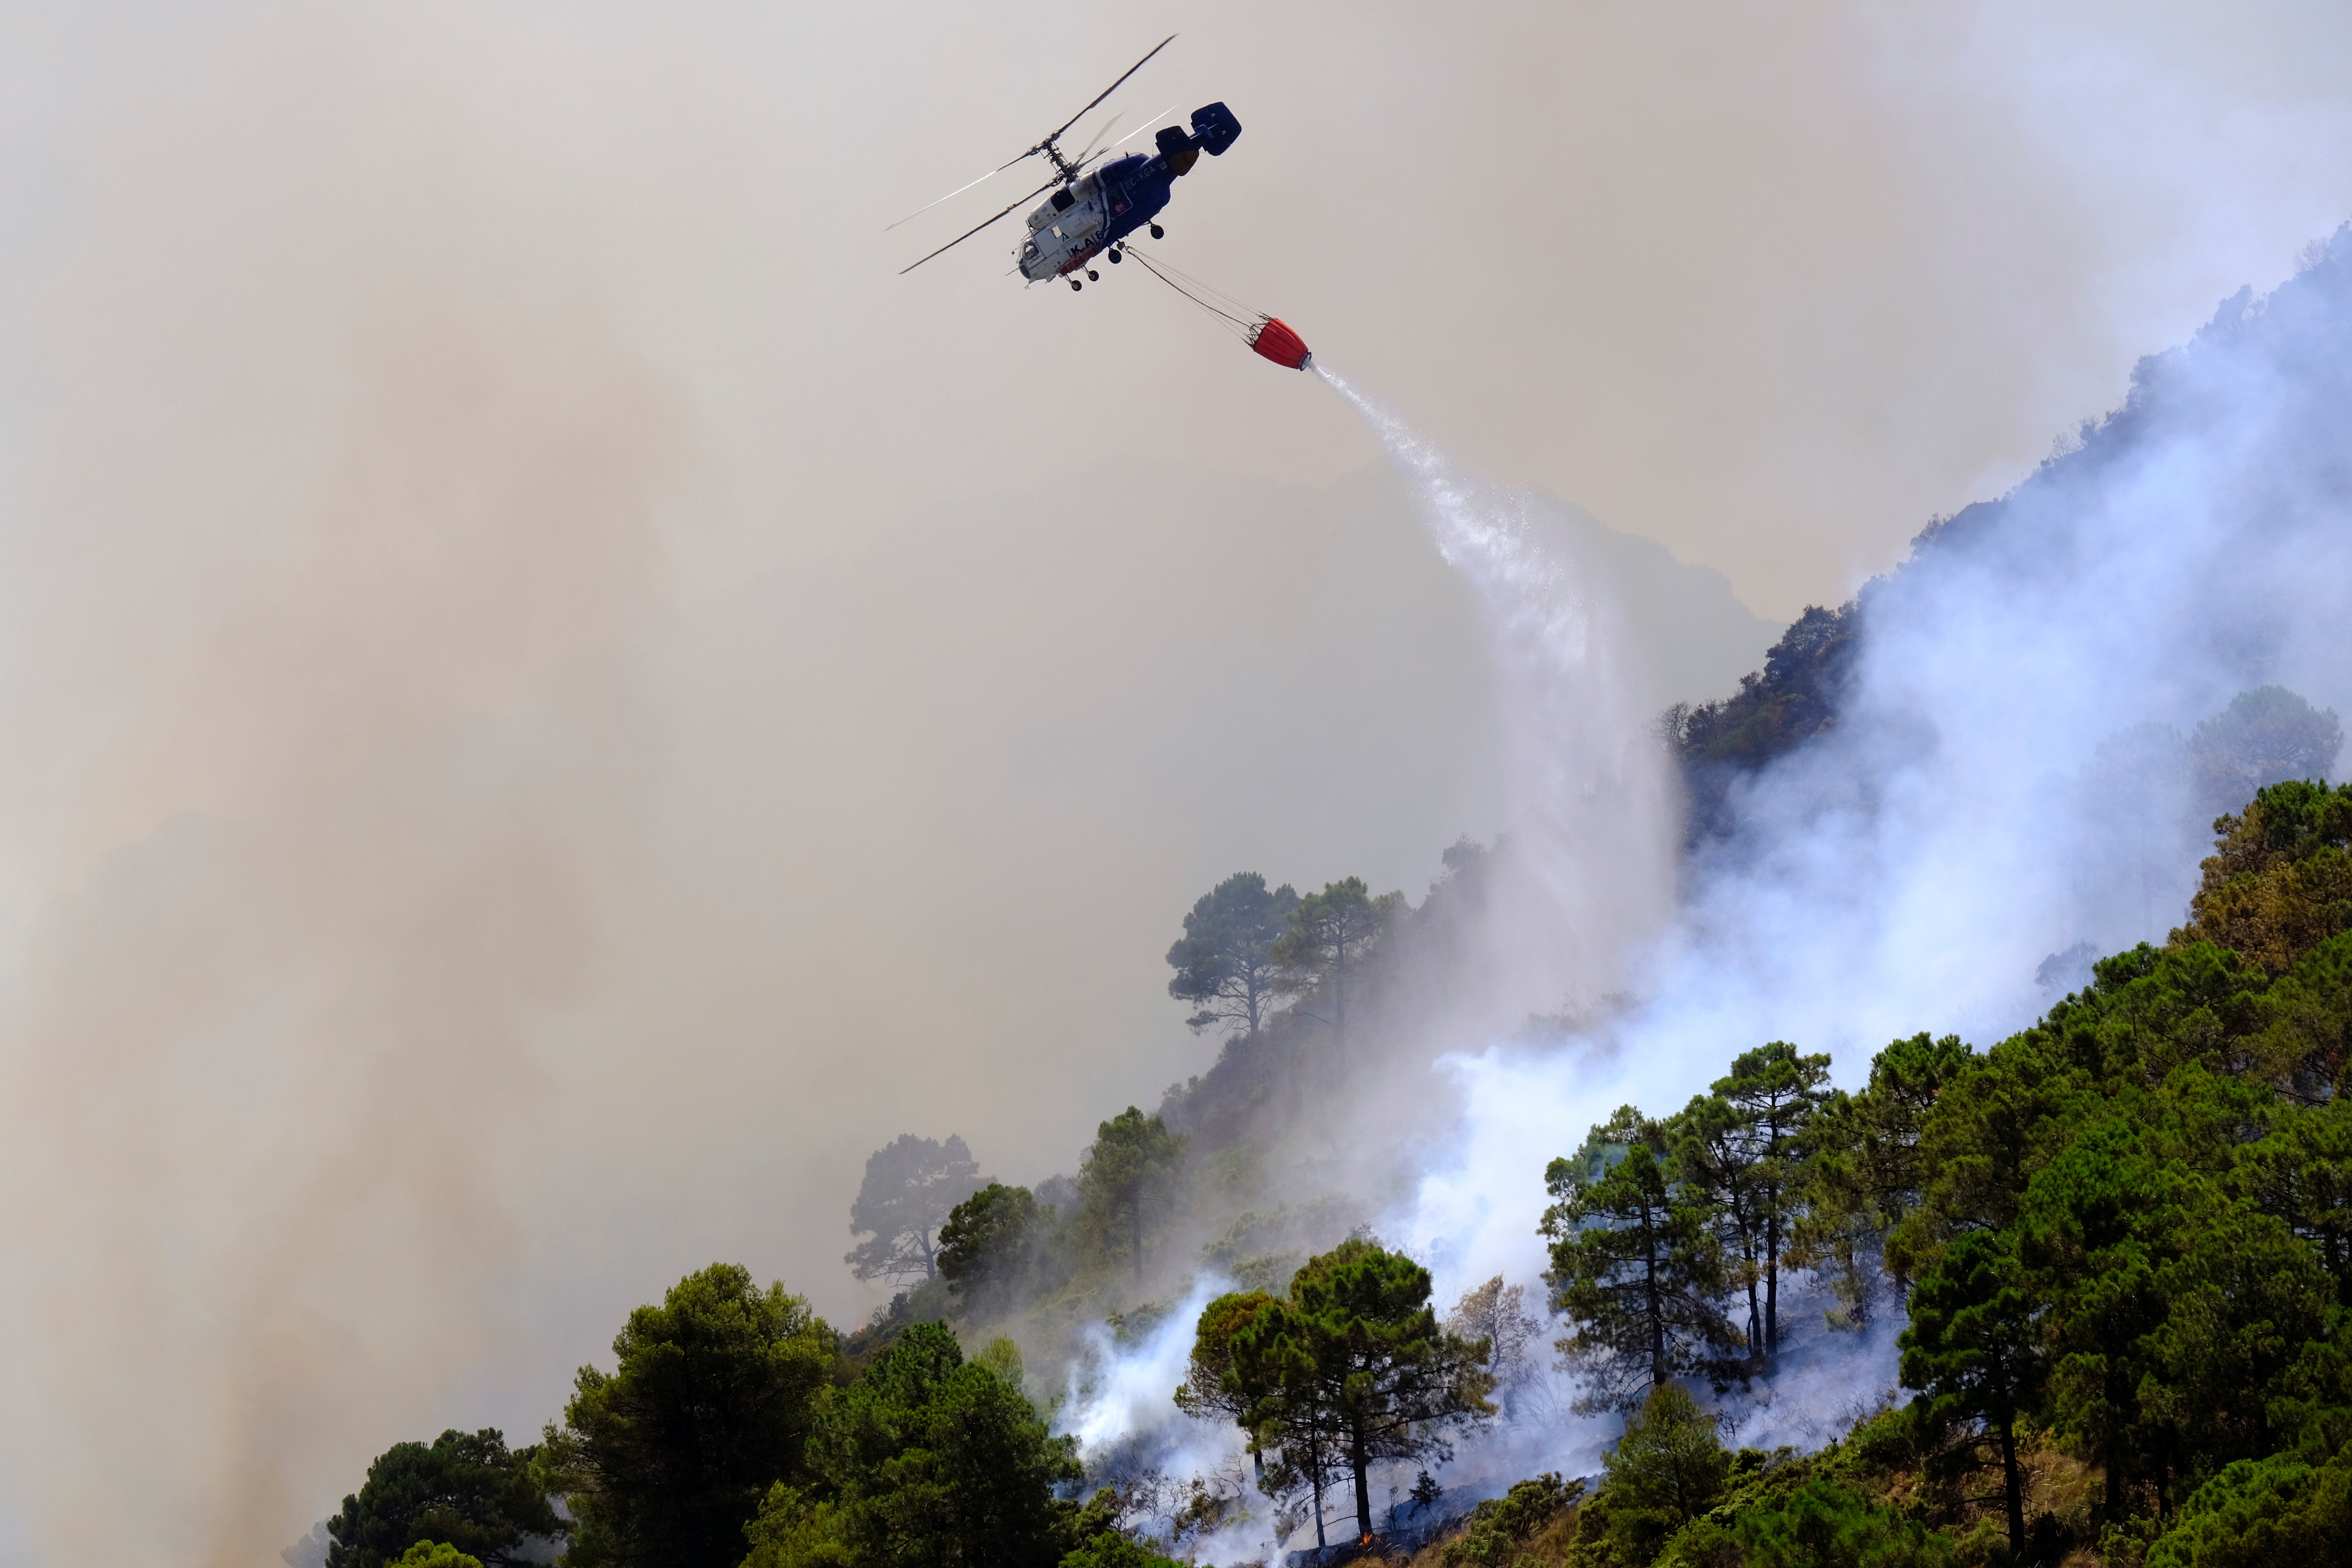  A helicopter battles a blaze in Alhaurin de la Torre, Malaga, Spain, Saturday, July 16, 2022. (Photo: Gregorio Marrero, AP)